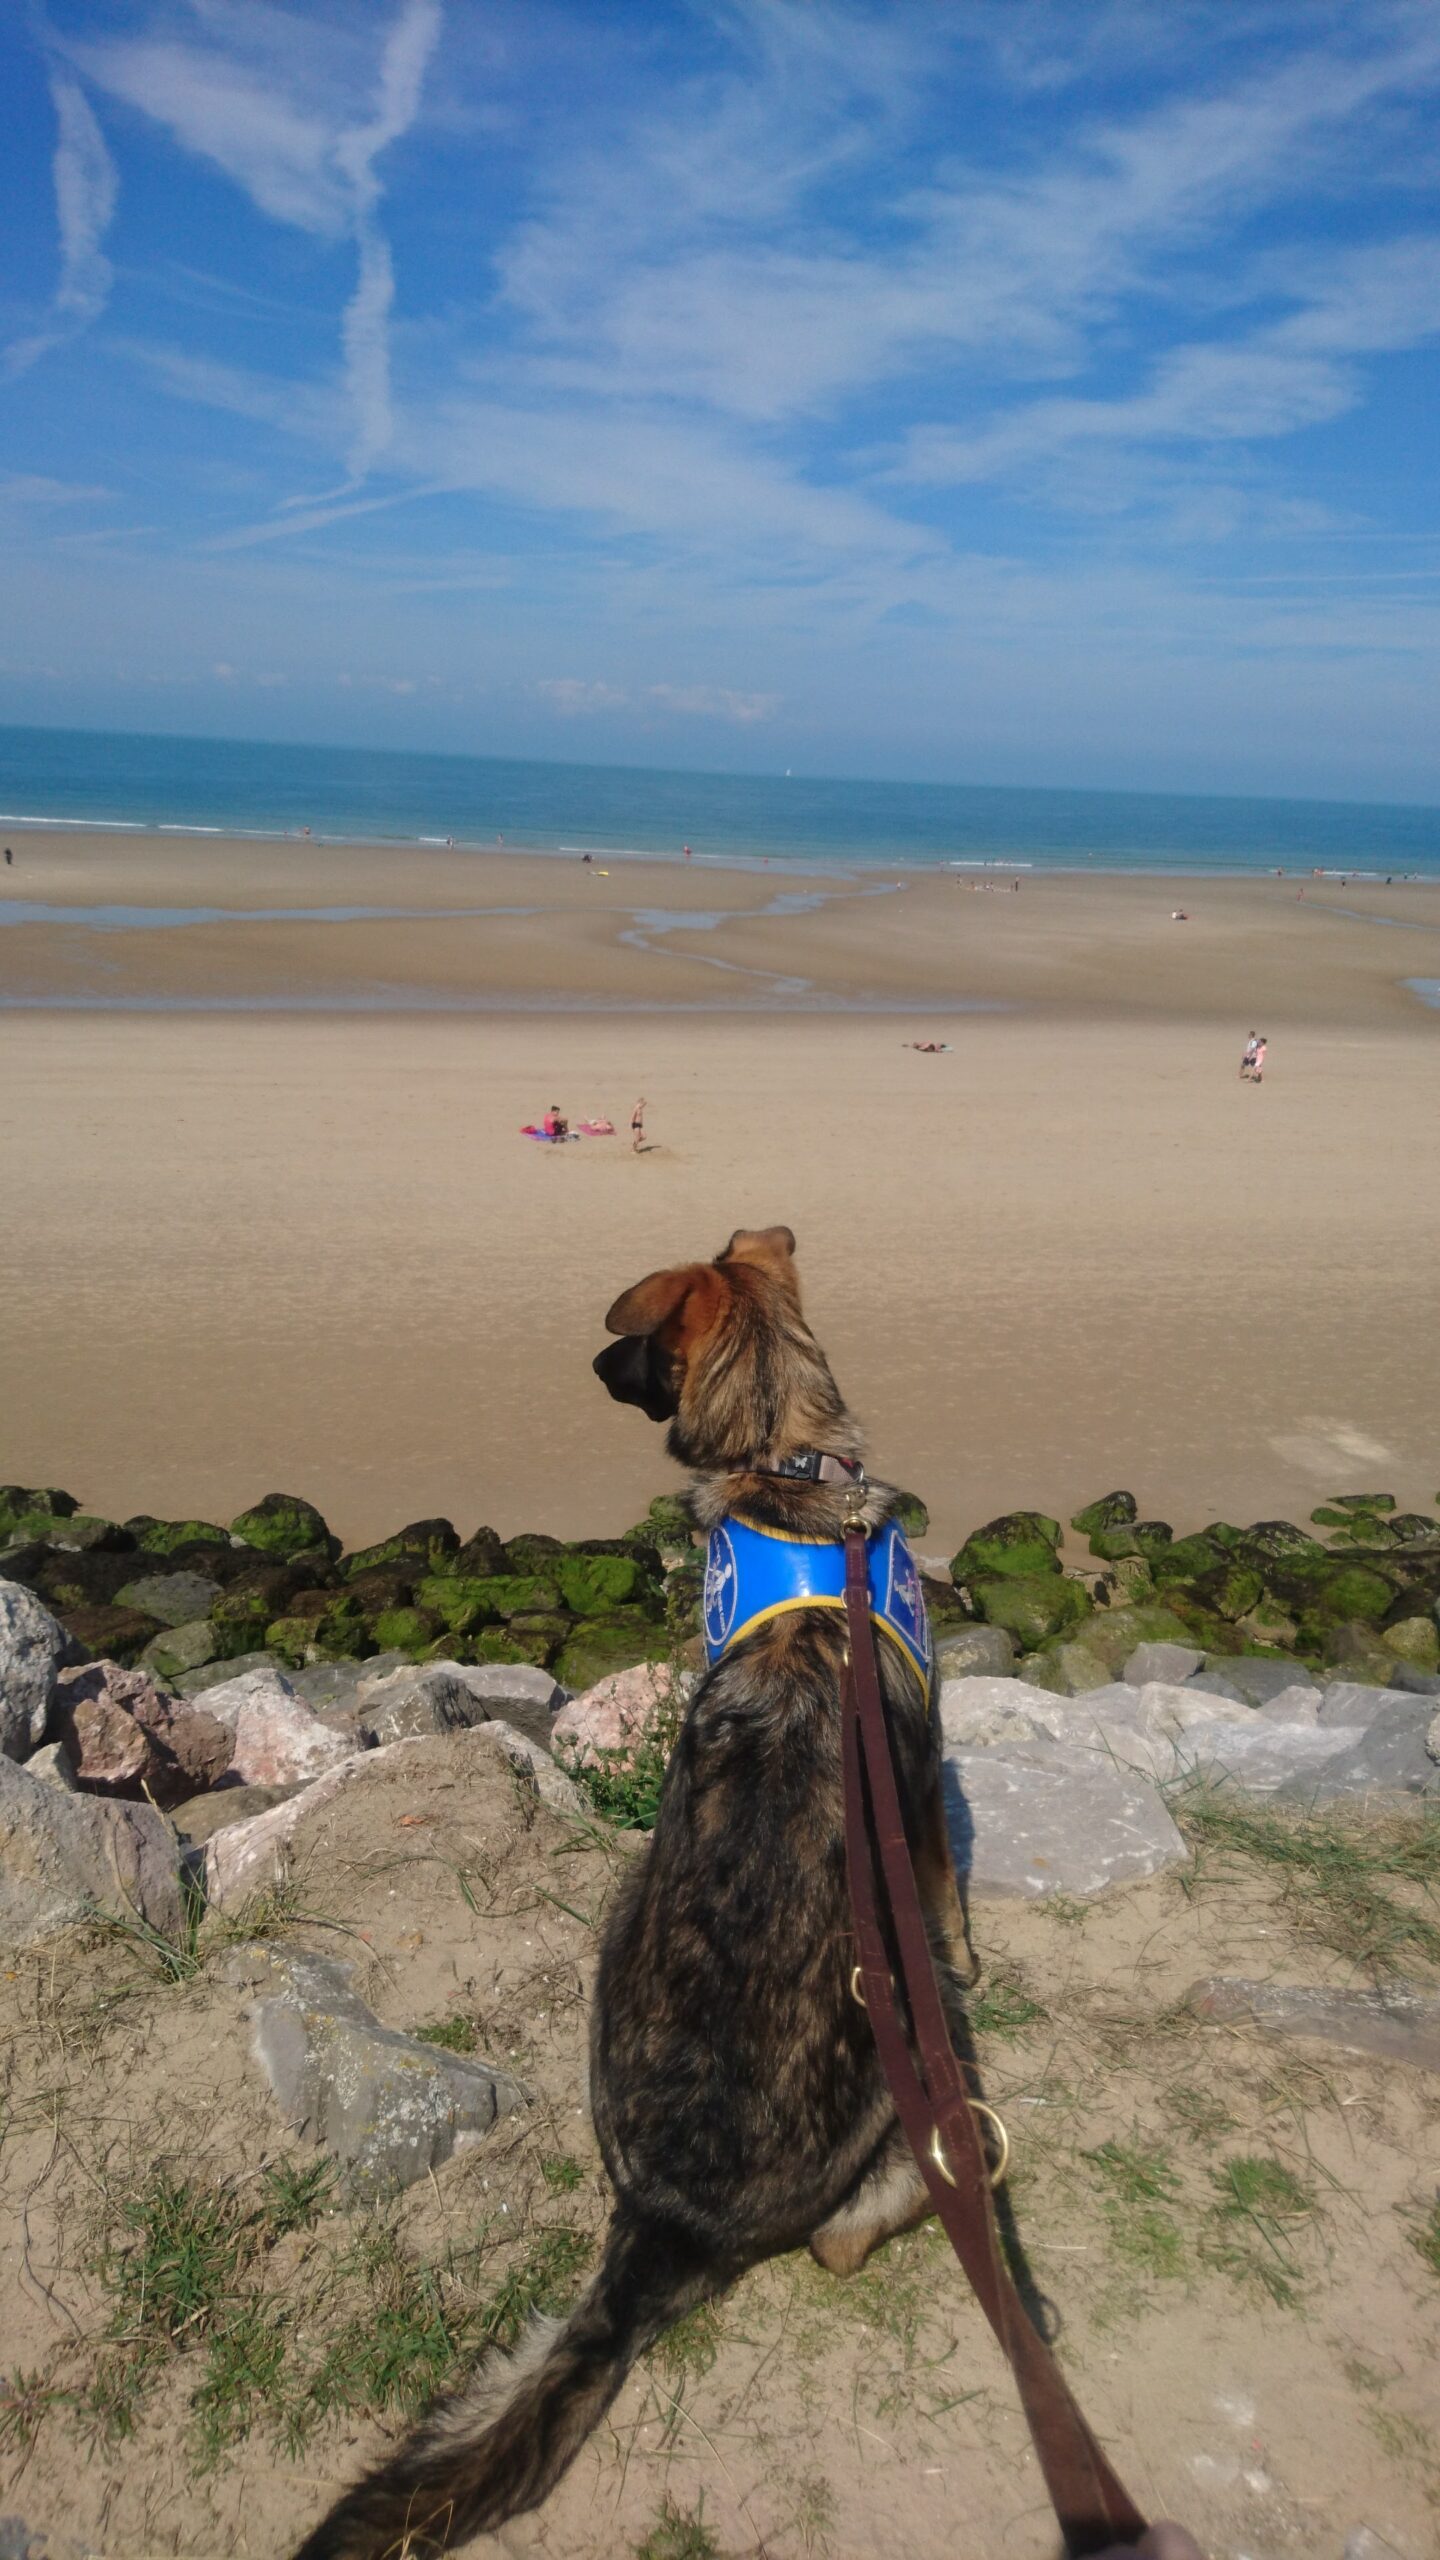 Nox, berger allemand de 7 mois, assis en laisse avec son dossard bleu d'élève chien guide sur le haut des rocher regardant la plage